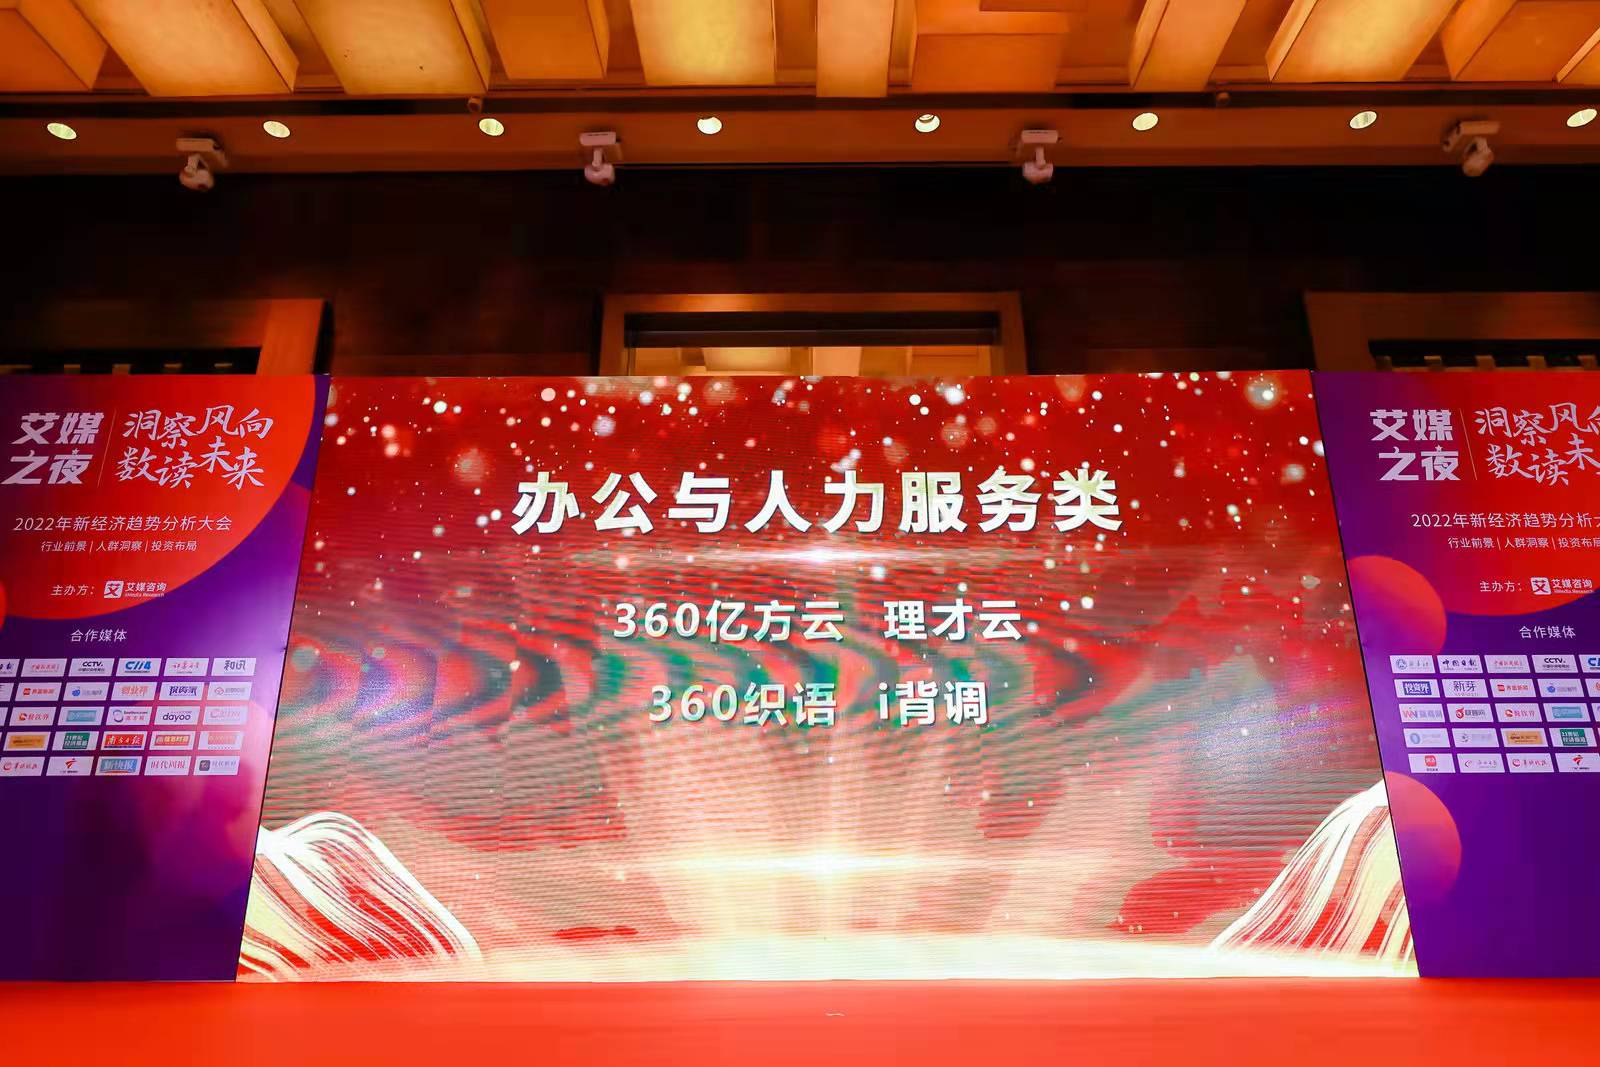 喜报 | 360亿方云荣获艾媒咨询“2021年度最佳企业服务平台”奖项